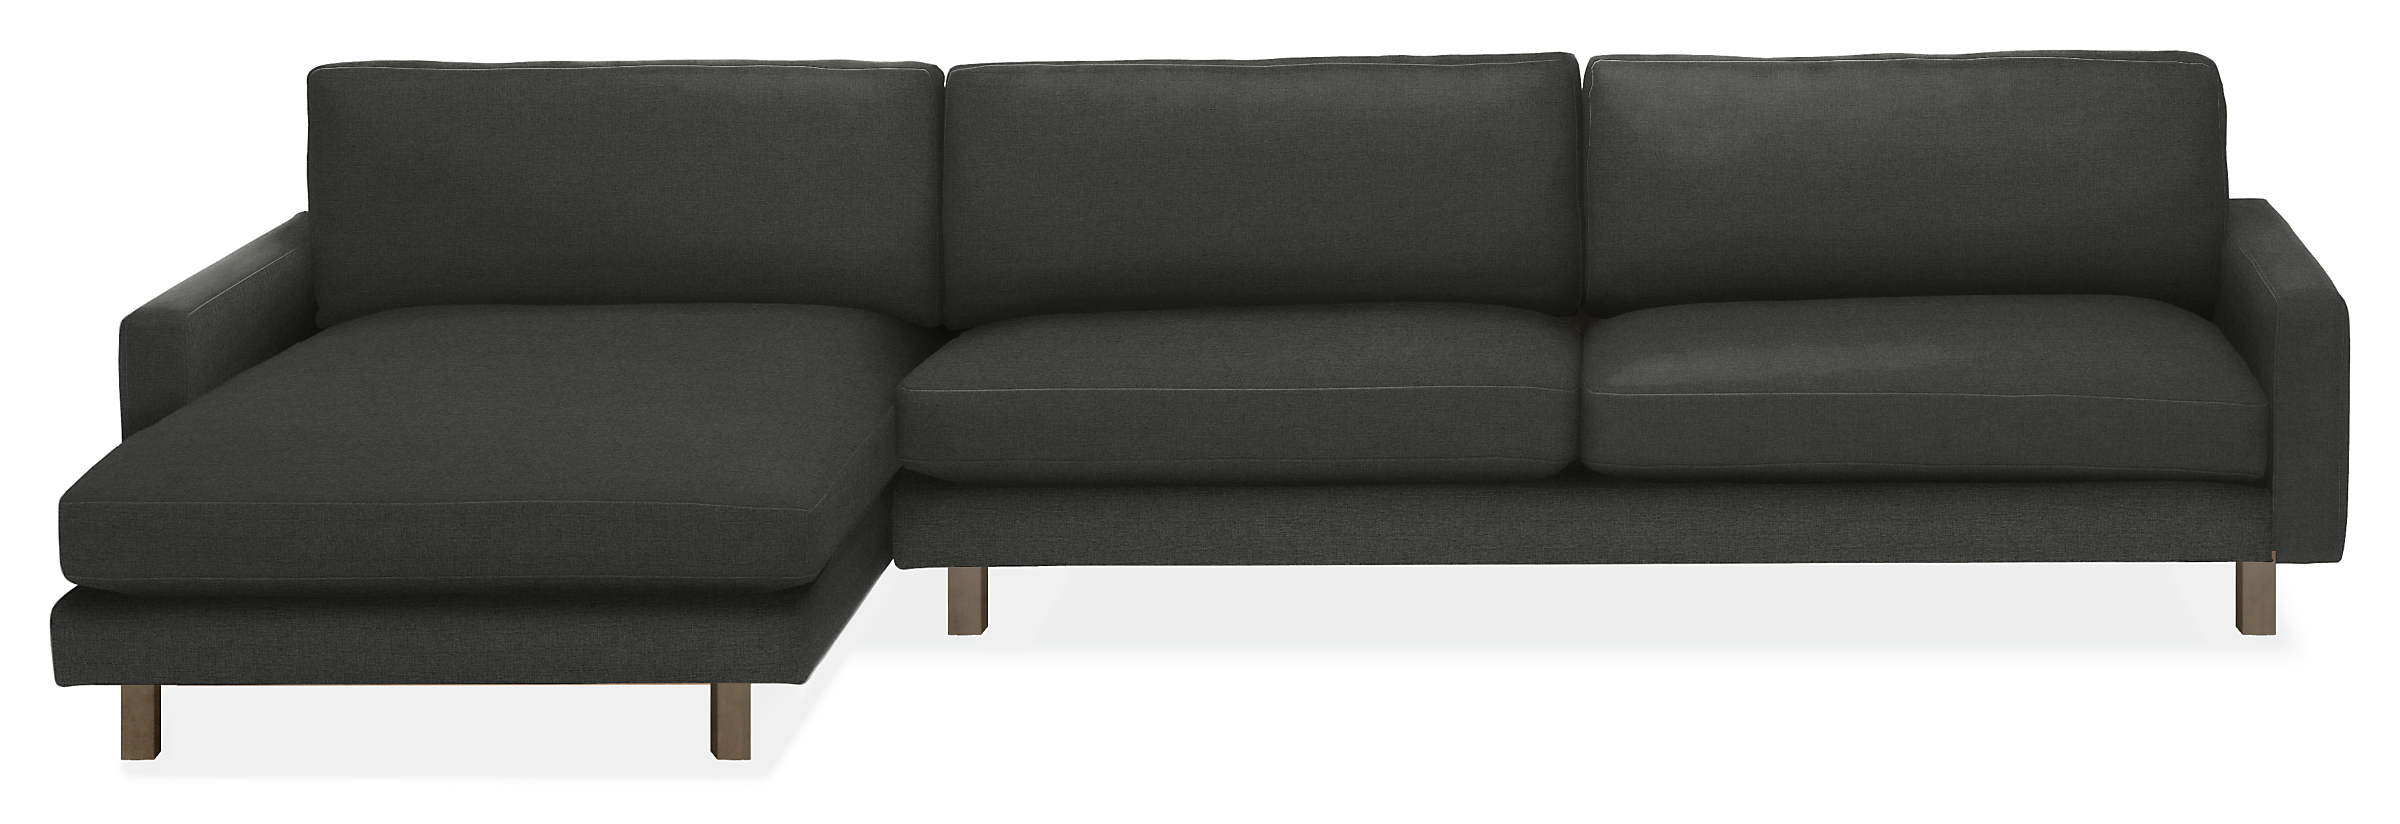 Pierson 129" Sofa w/Left-Arm Chaise